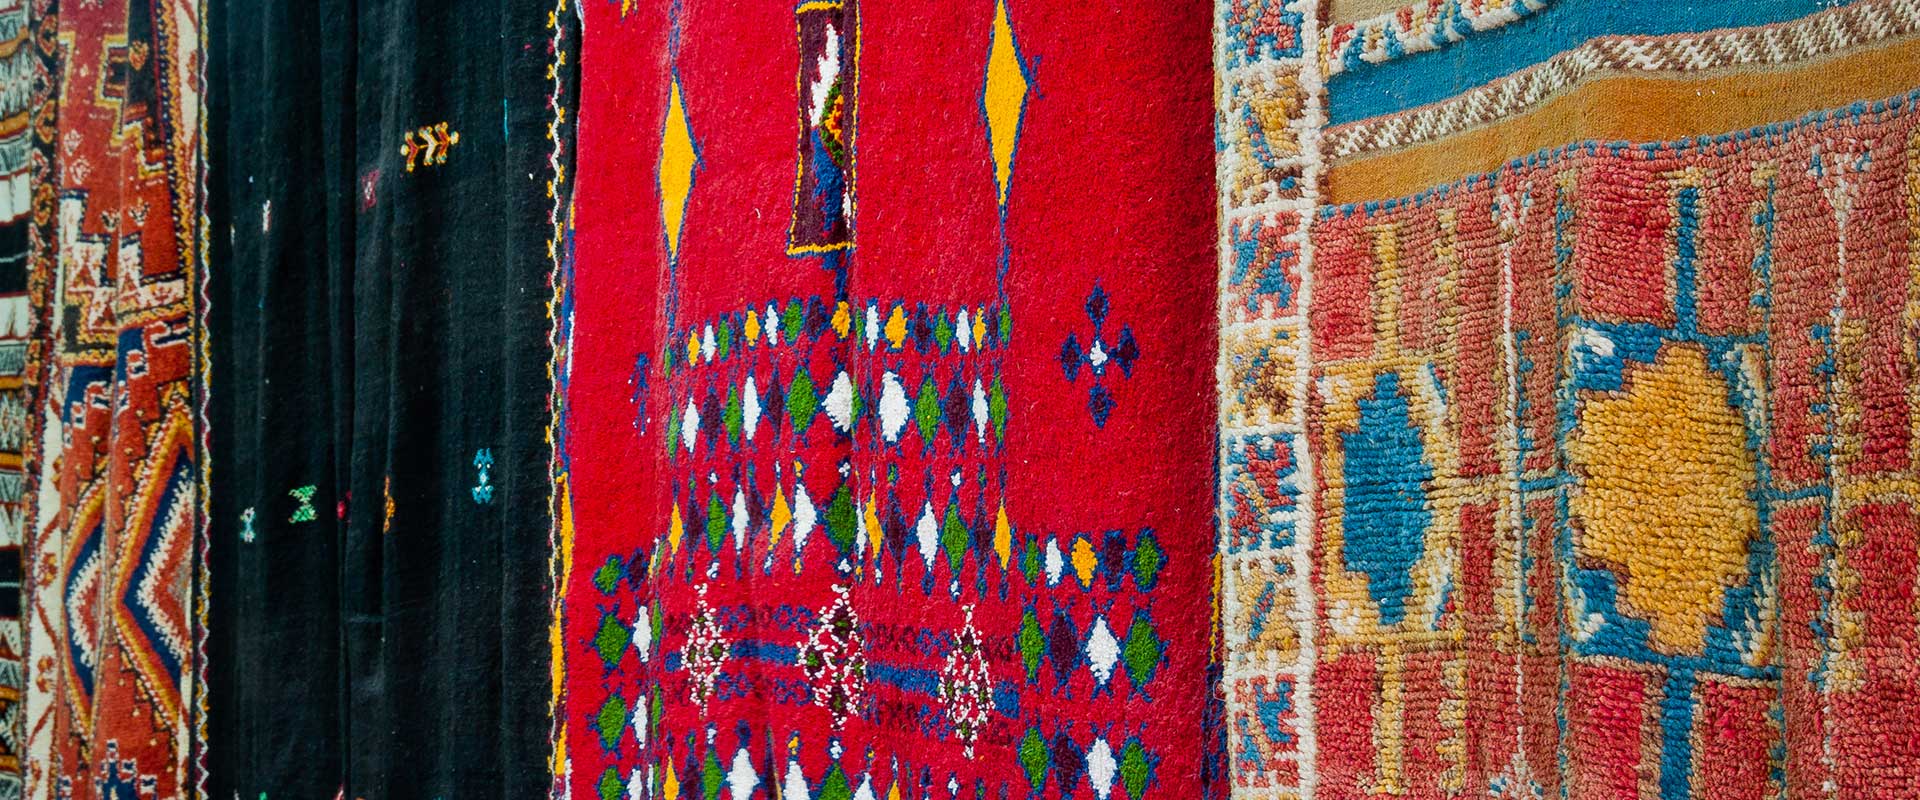 Le tapis de Taznakhte, tradition, art et beauté